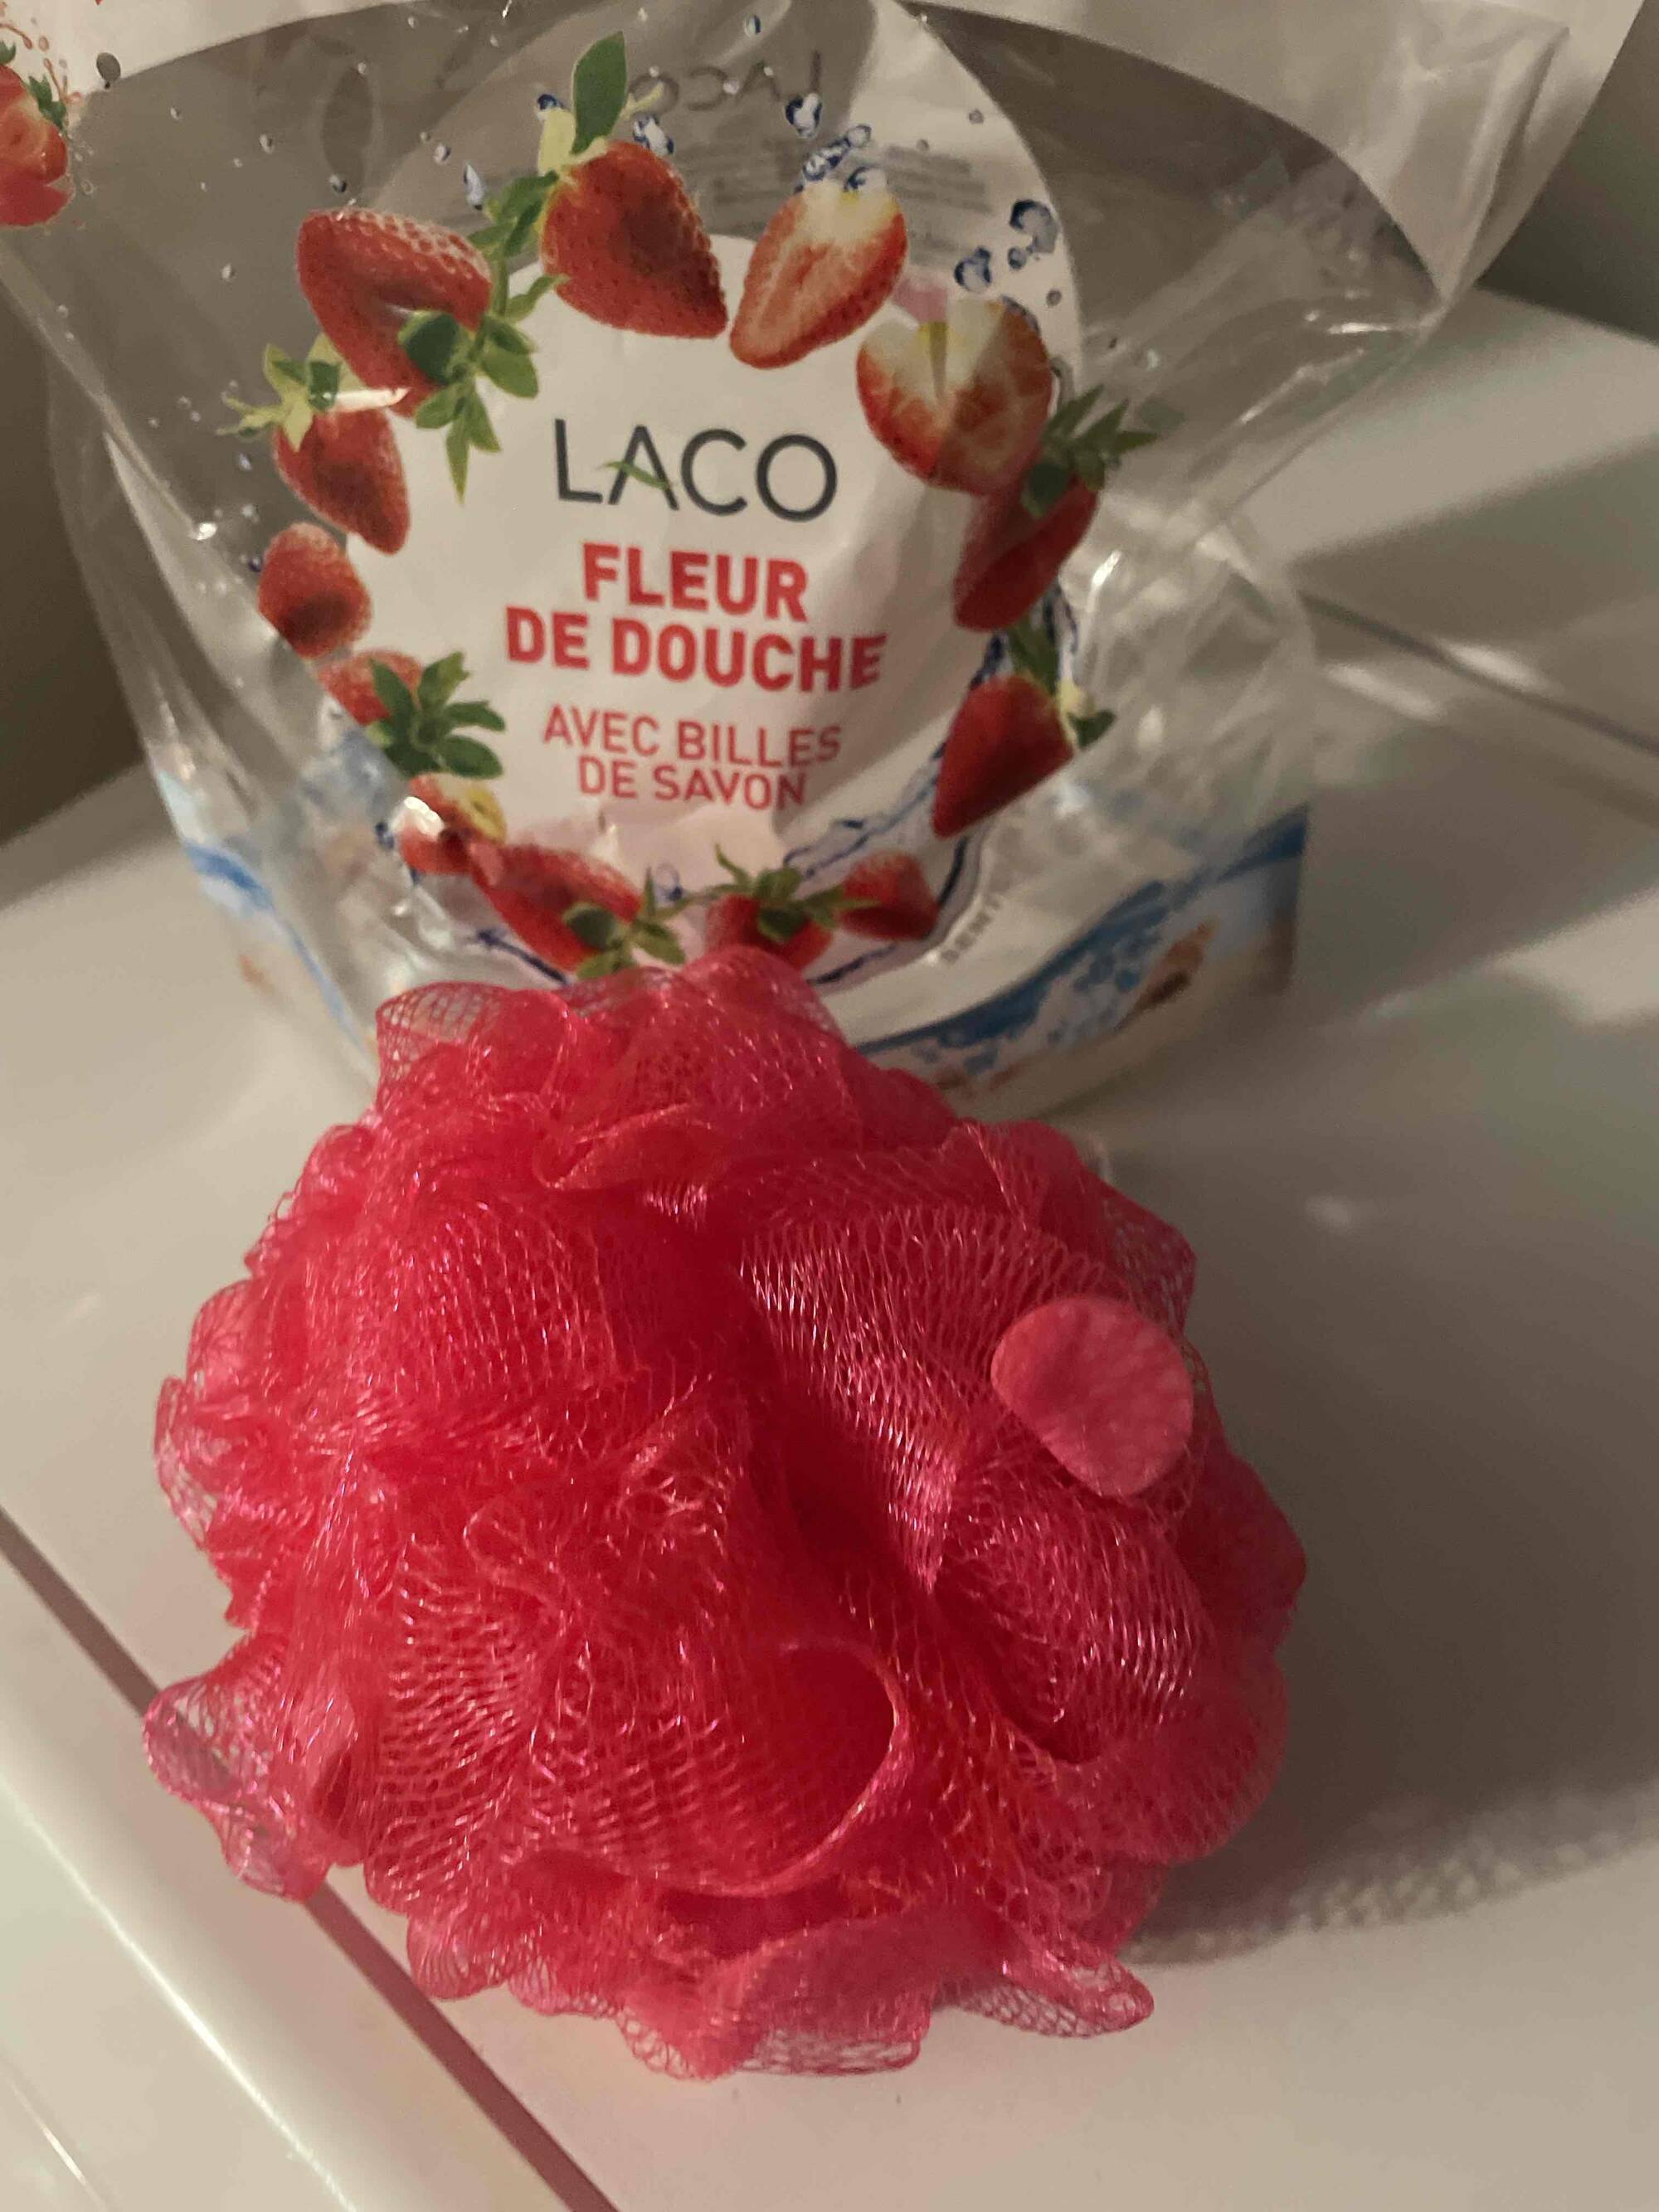 LACO - Fleur de douche avec billes de savon